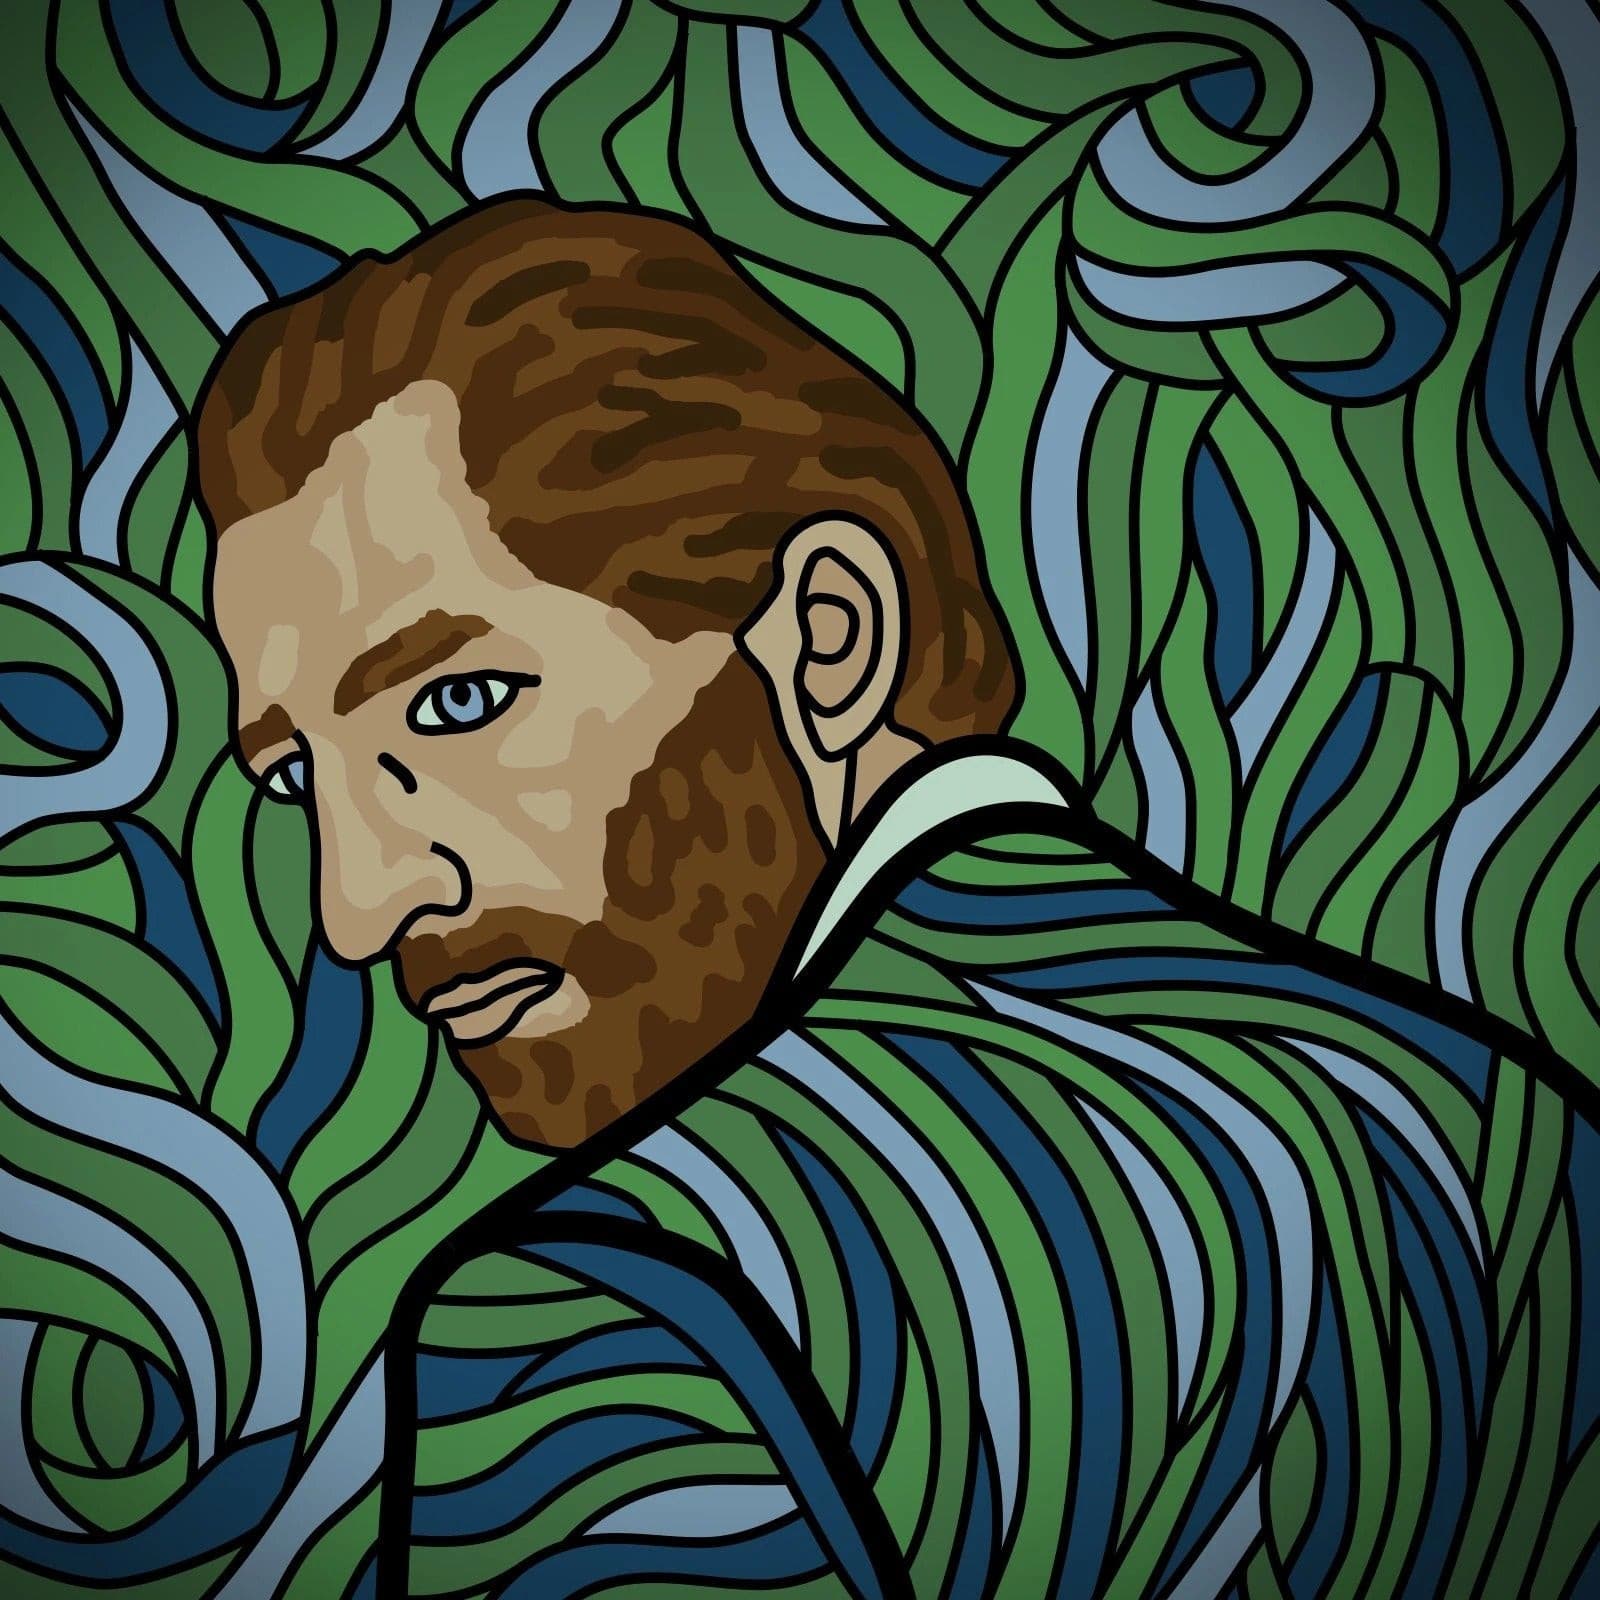 Vincent Van Gogh - Self-Portrait - Revisted Patch MR.X Label Patch Suburban.